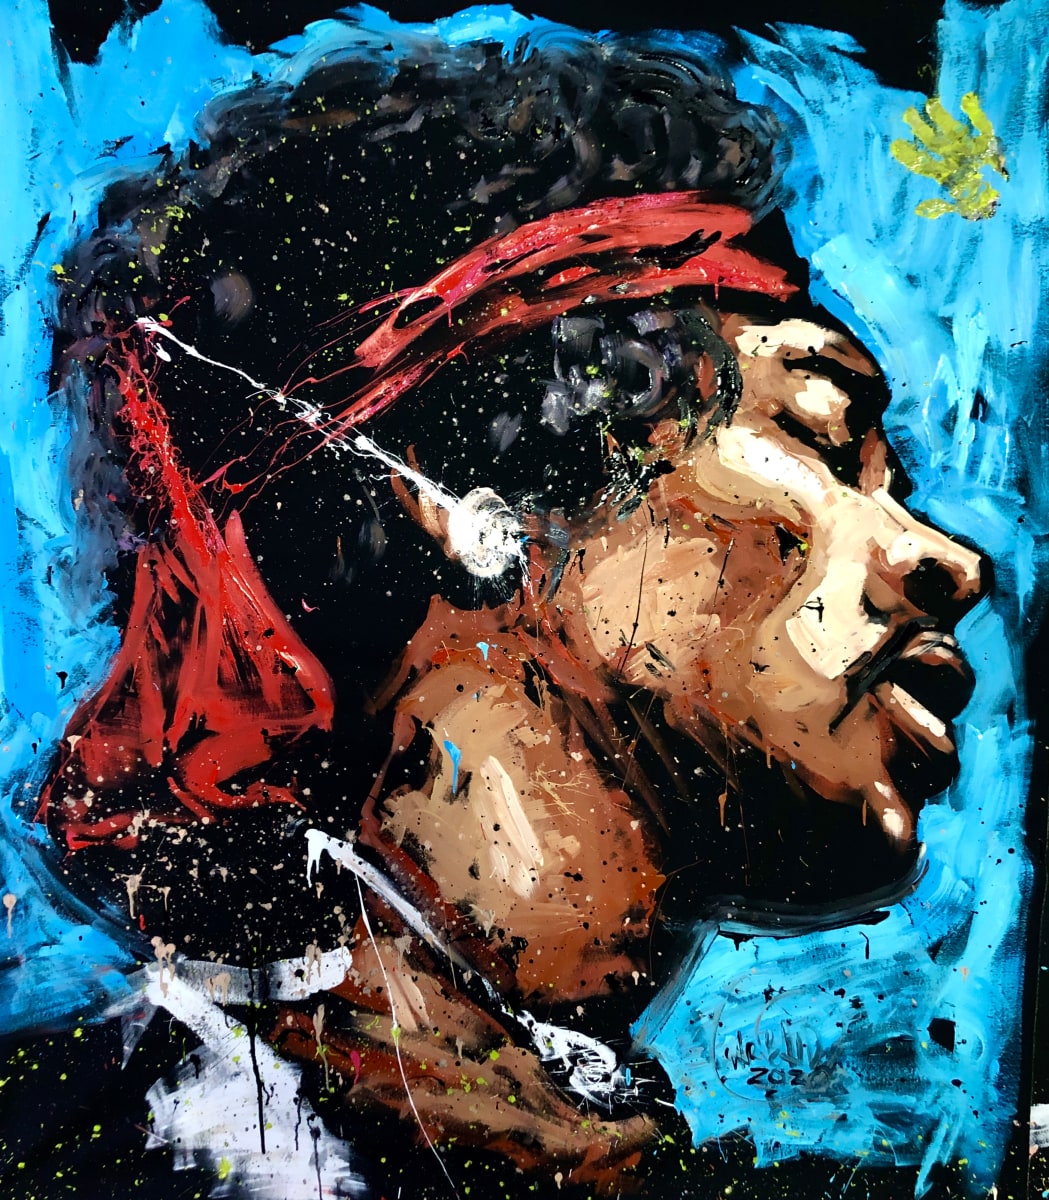 Jimi Hendrix by David Garibaldi 